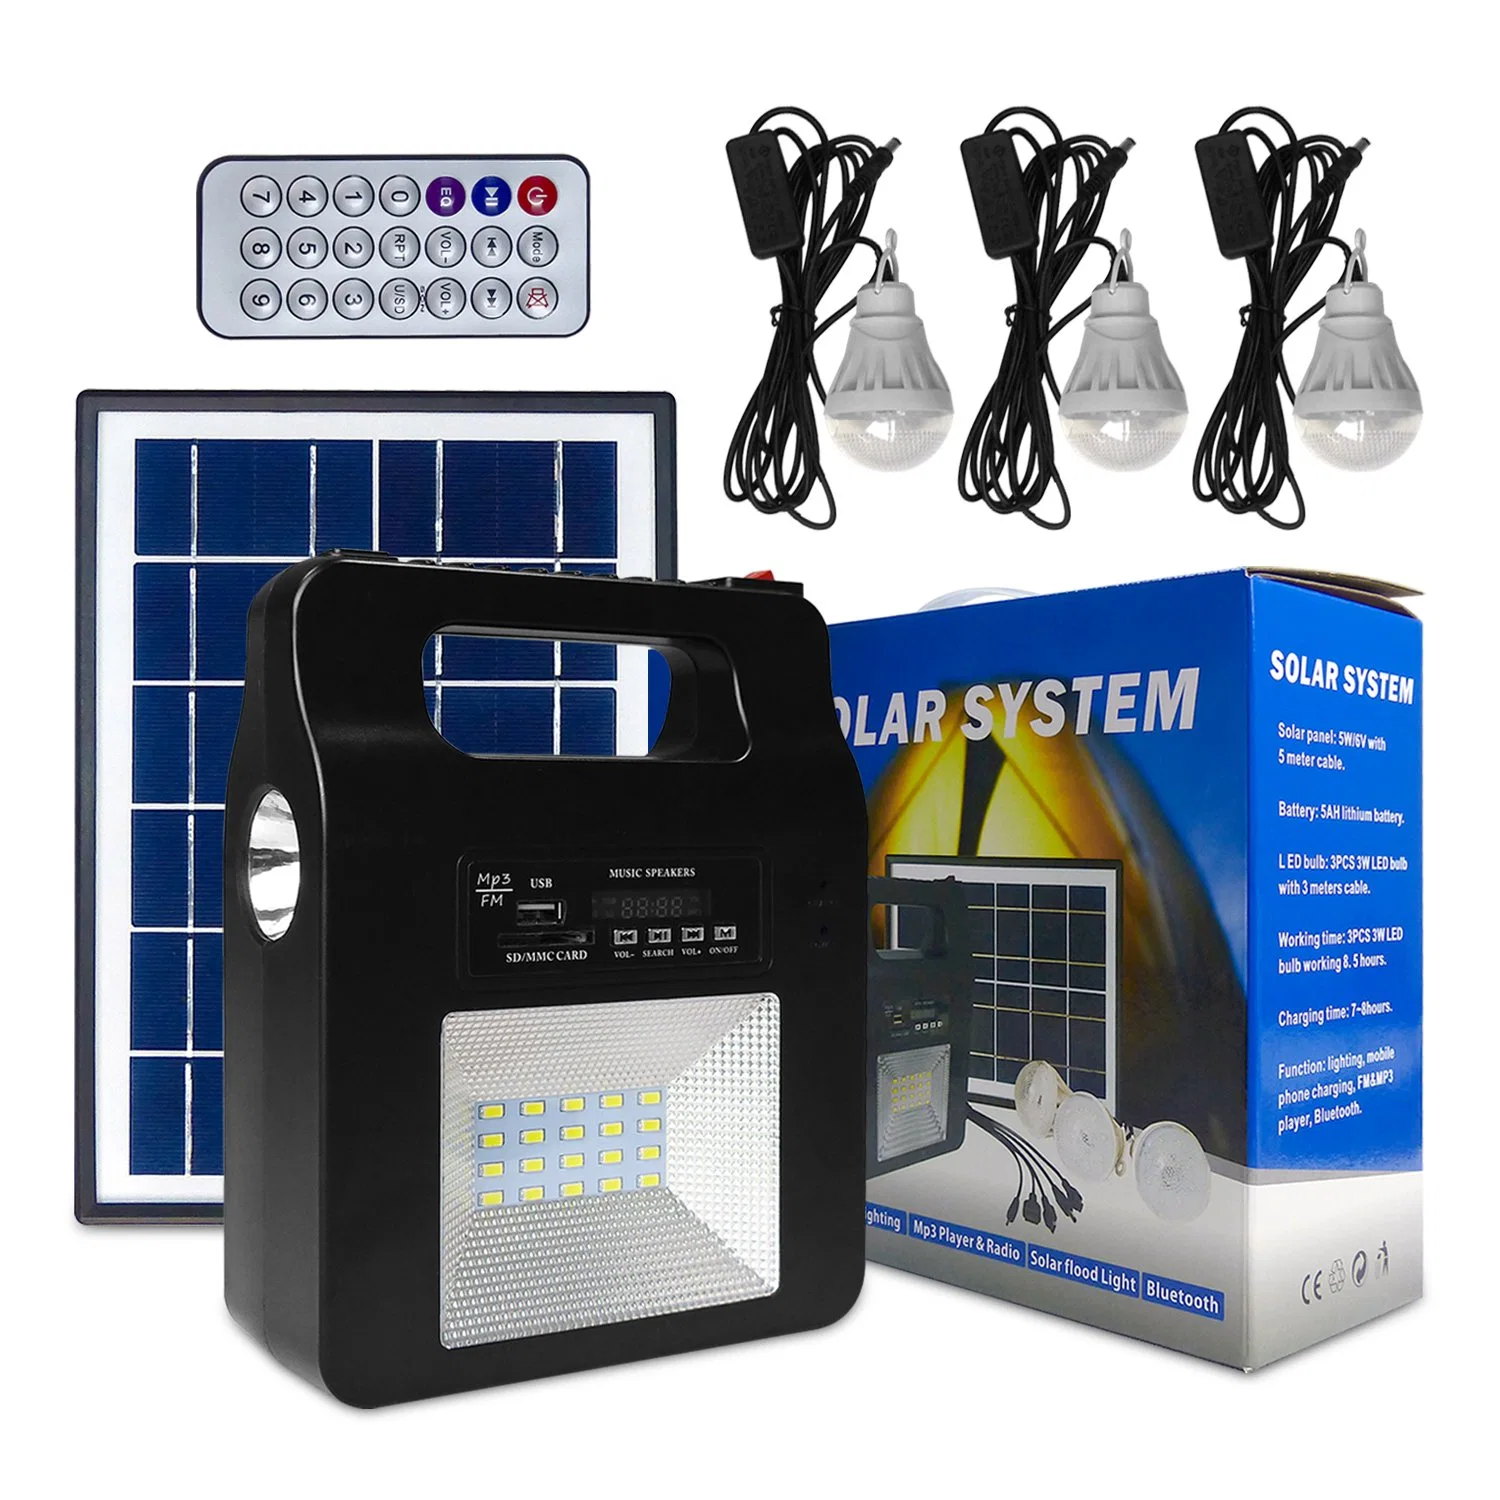 نظام إضاءة يعمل بالطاقة للوحة الشمسية للتحكم عن بُعد عن بُعد المحمولة الصغيرة من أجل راديو نظام الطاقة الشمسية لضوء الوميض المنزلي مع مصباح